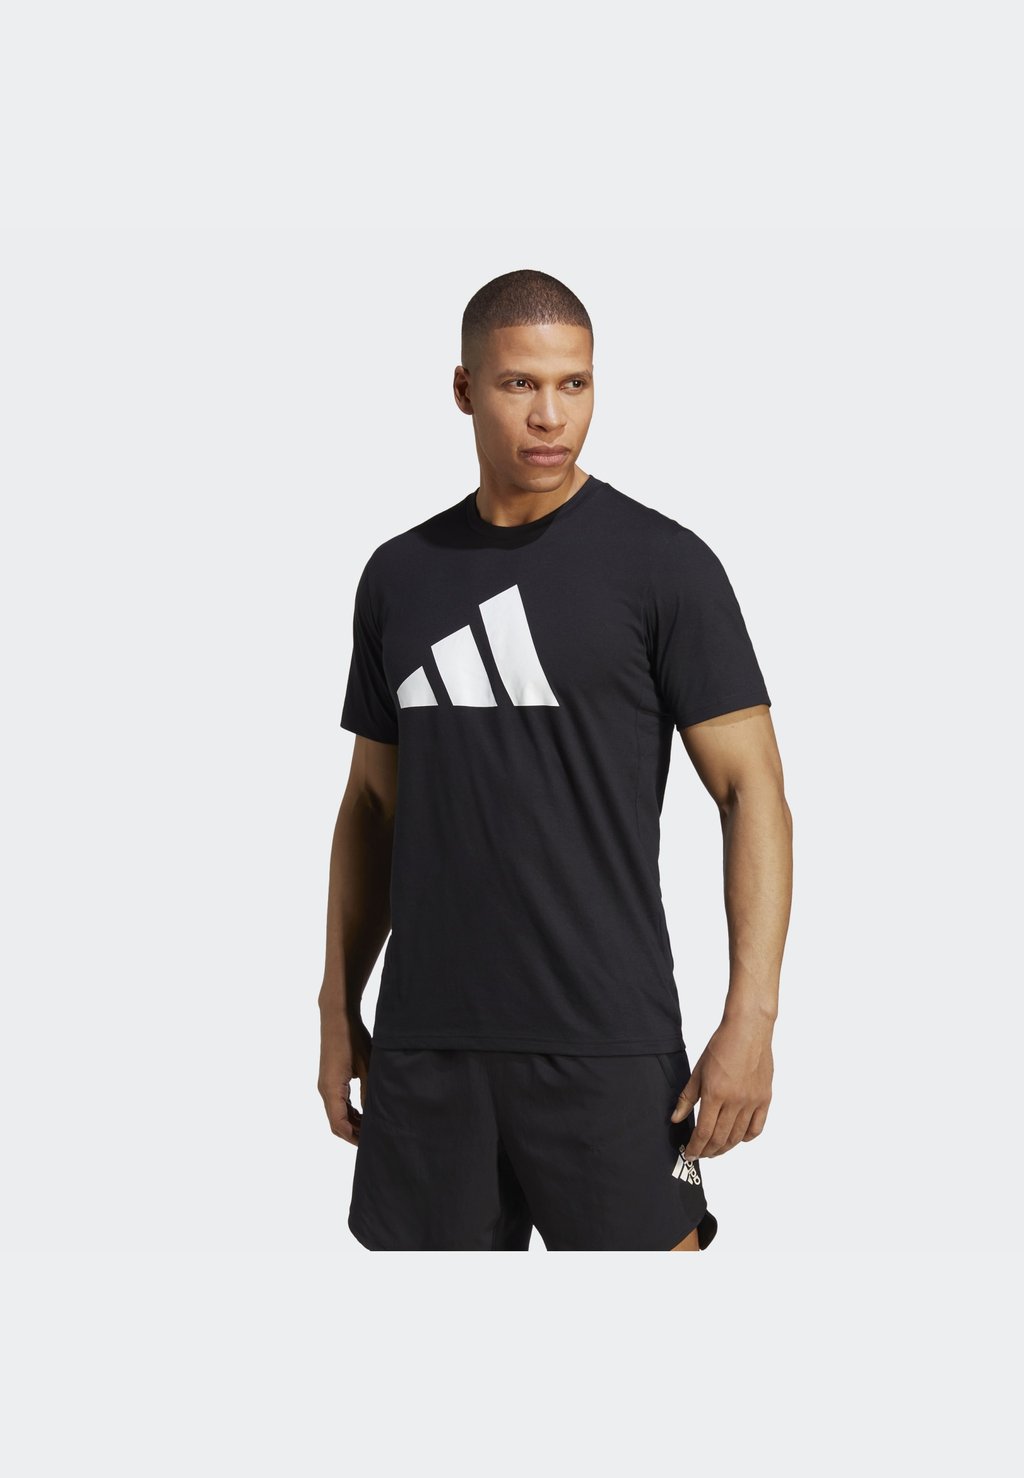 Футболка с принтом Adidas, чёрная/белая aseven чёрная футболка с принтом aseven